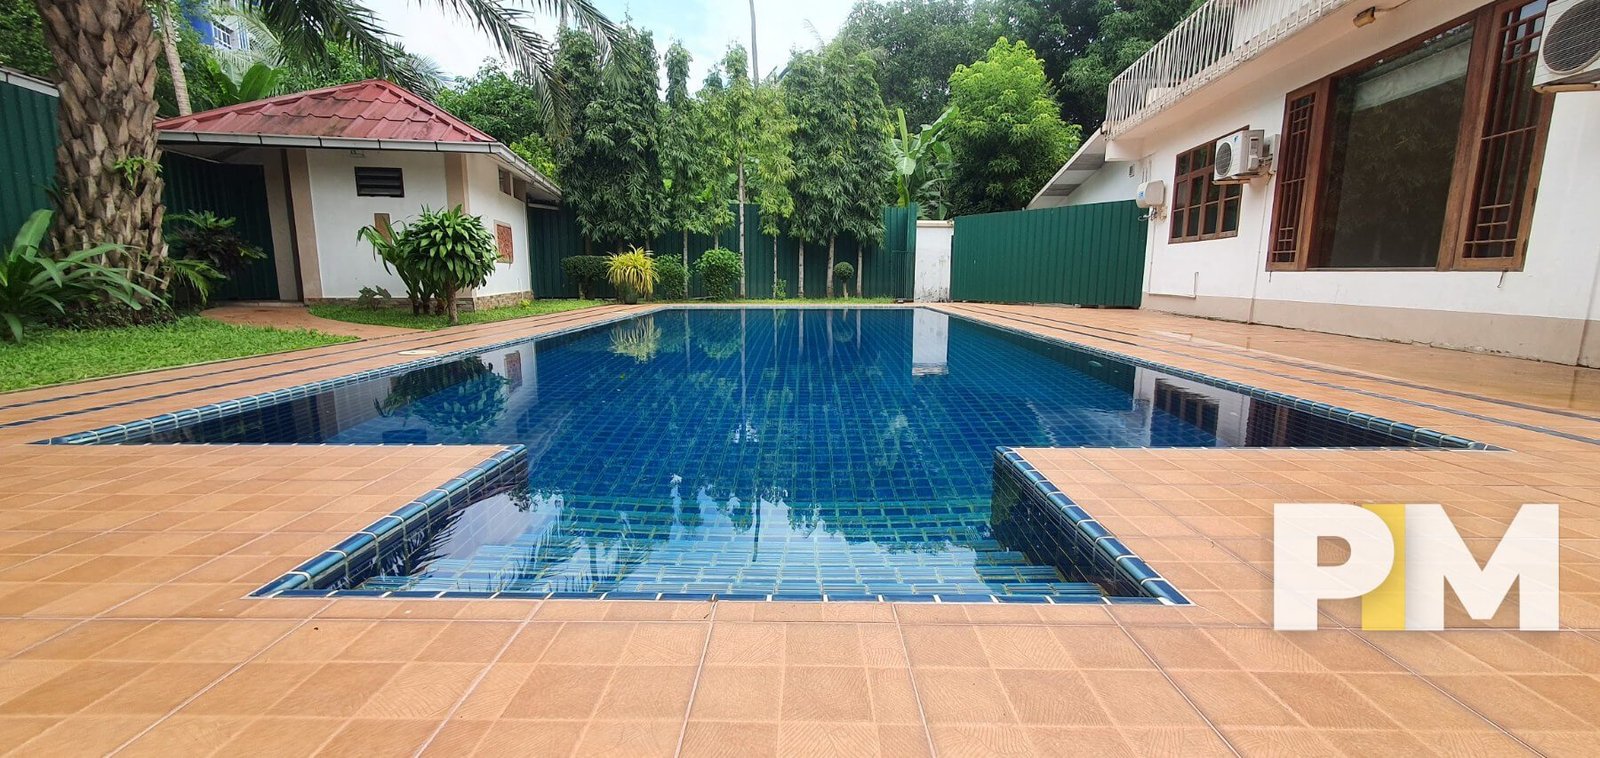 Pool view - Real Estate in Yangon